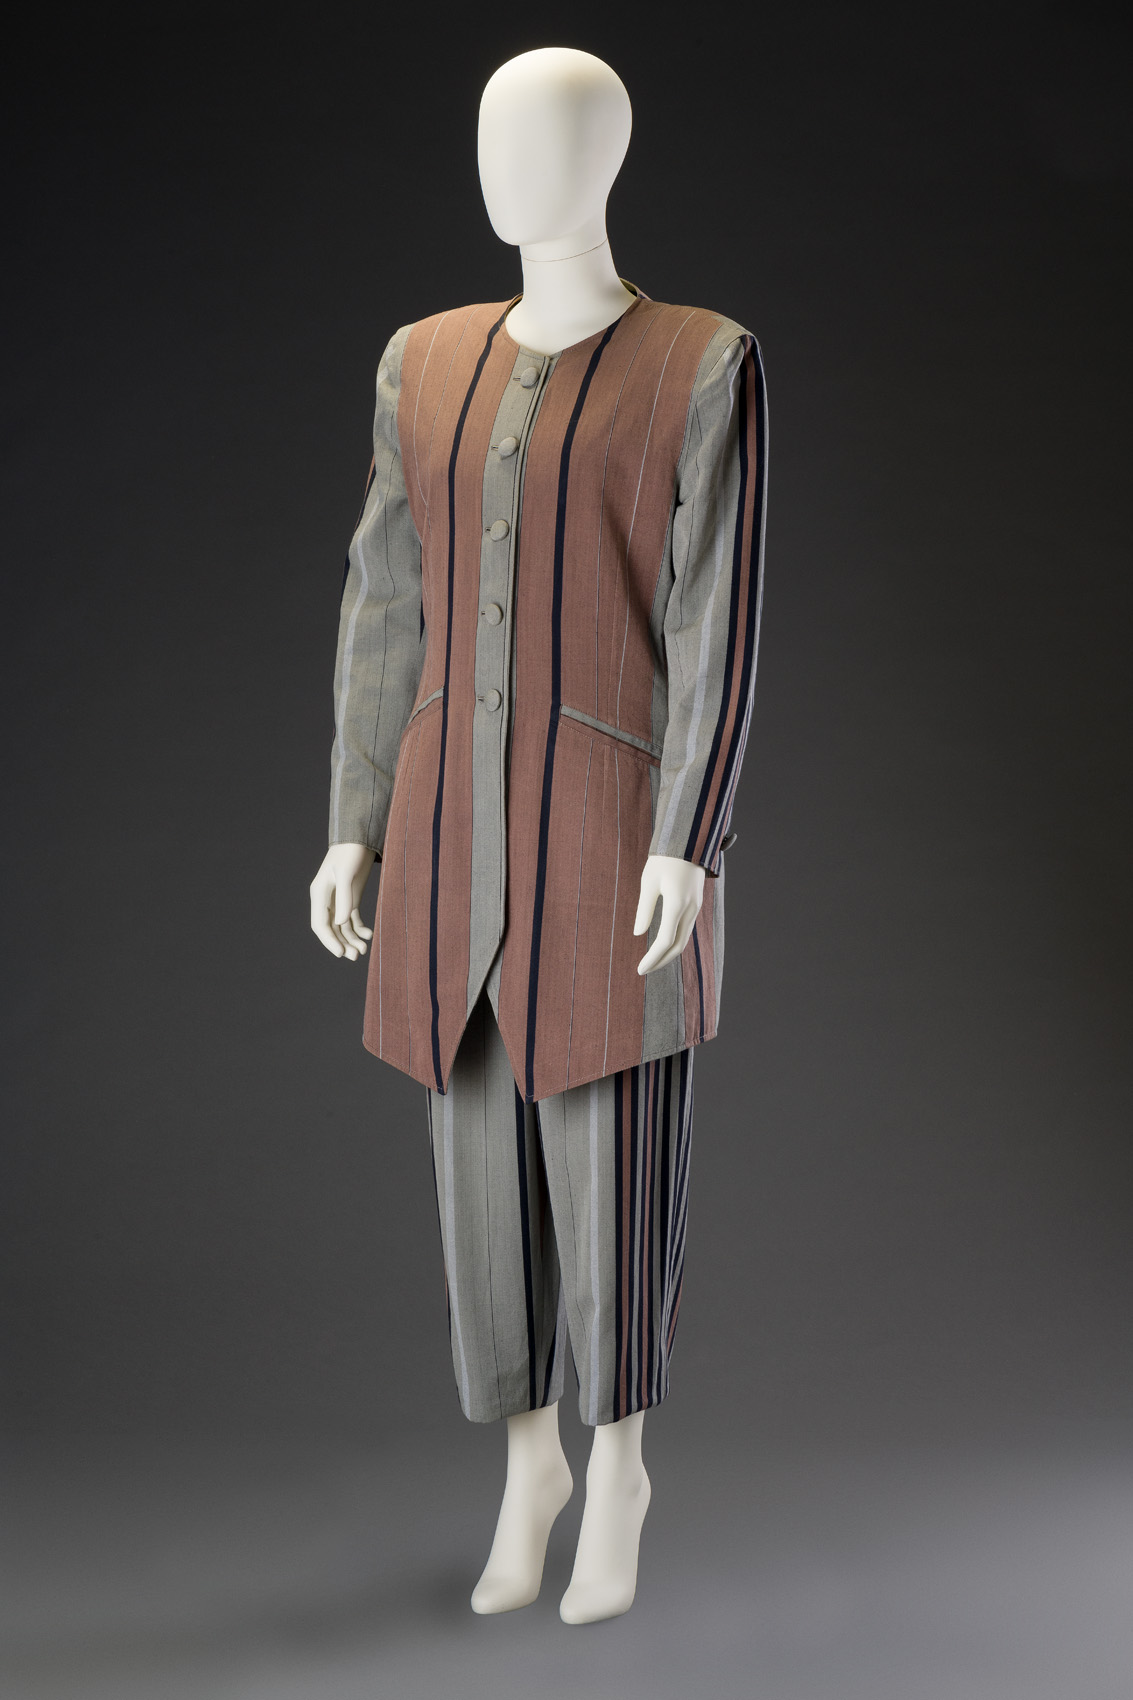 Kalhotový kostým s dlouhým sakem a kalhotami nad kotníky